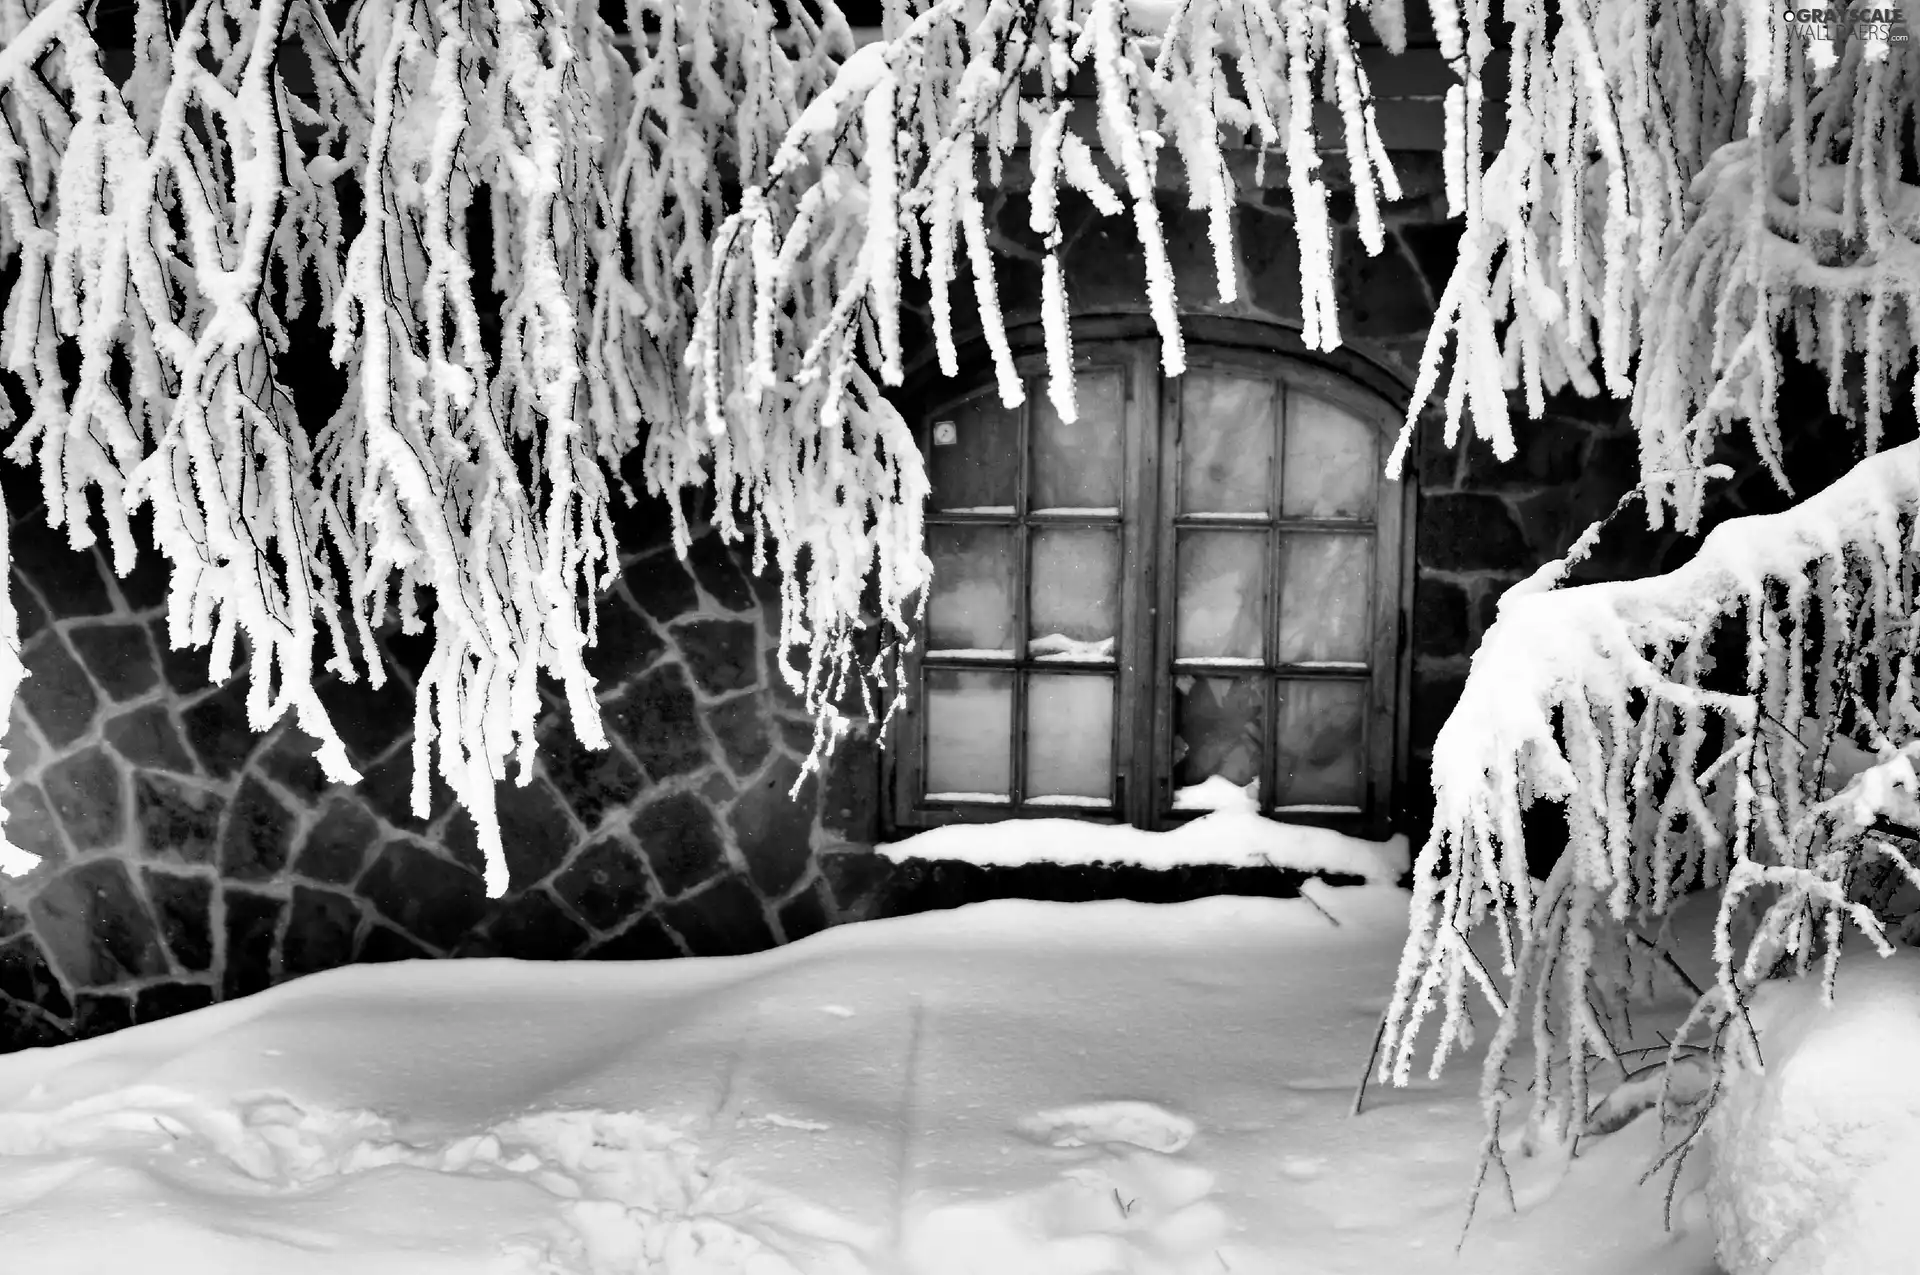 Snowy, Twigs, house, Window, winter